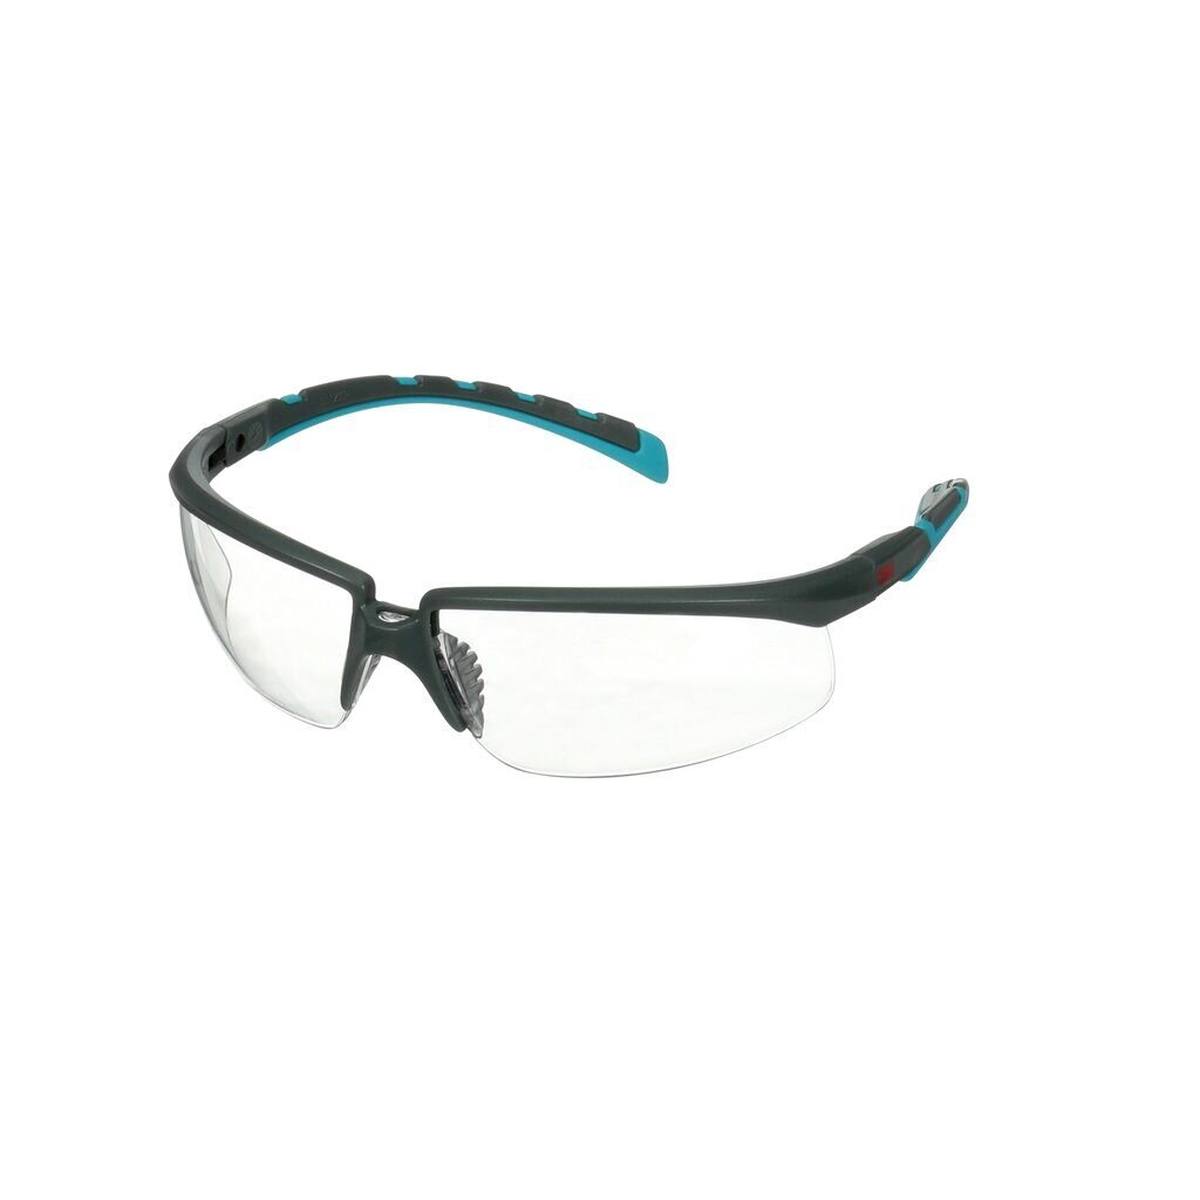 3M Solus 2000 Schutzbrille, blau/graue Bügel, kratzfest+ (K), klare Scheibe, winkelverstellbar, S2001ASP-BLU-EU